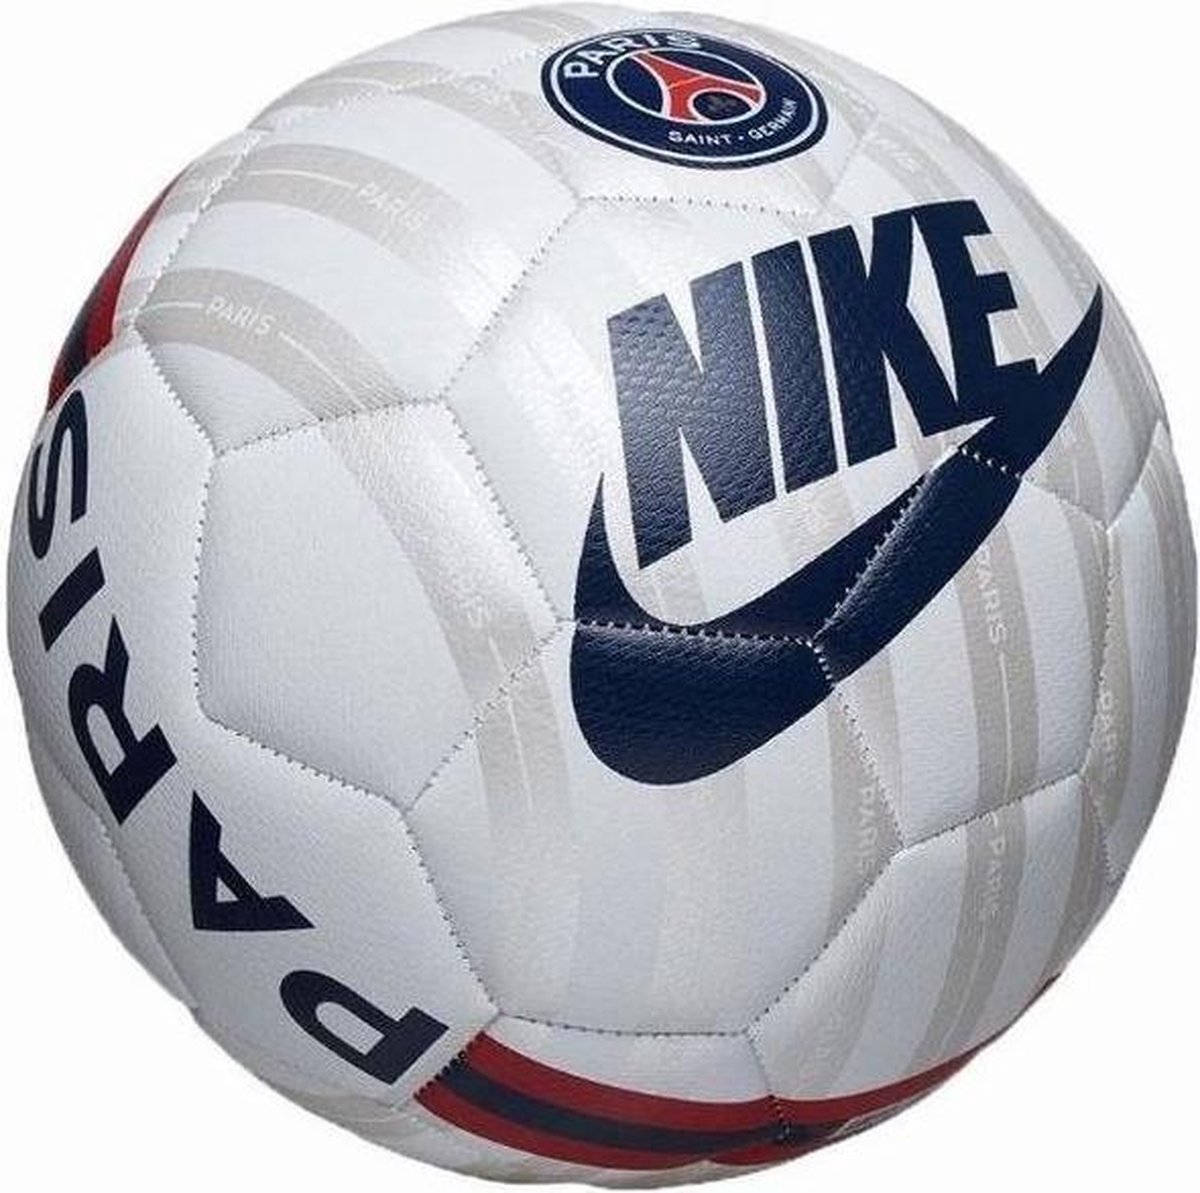 Football PSG / ballon de Nike (Paris Saint Germain) | bol.com